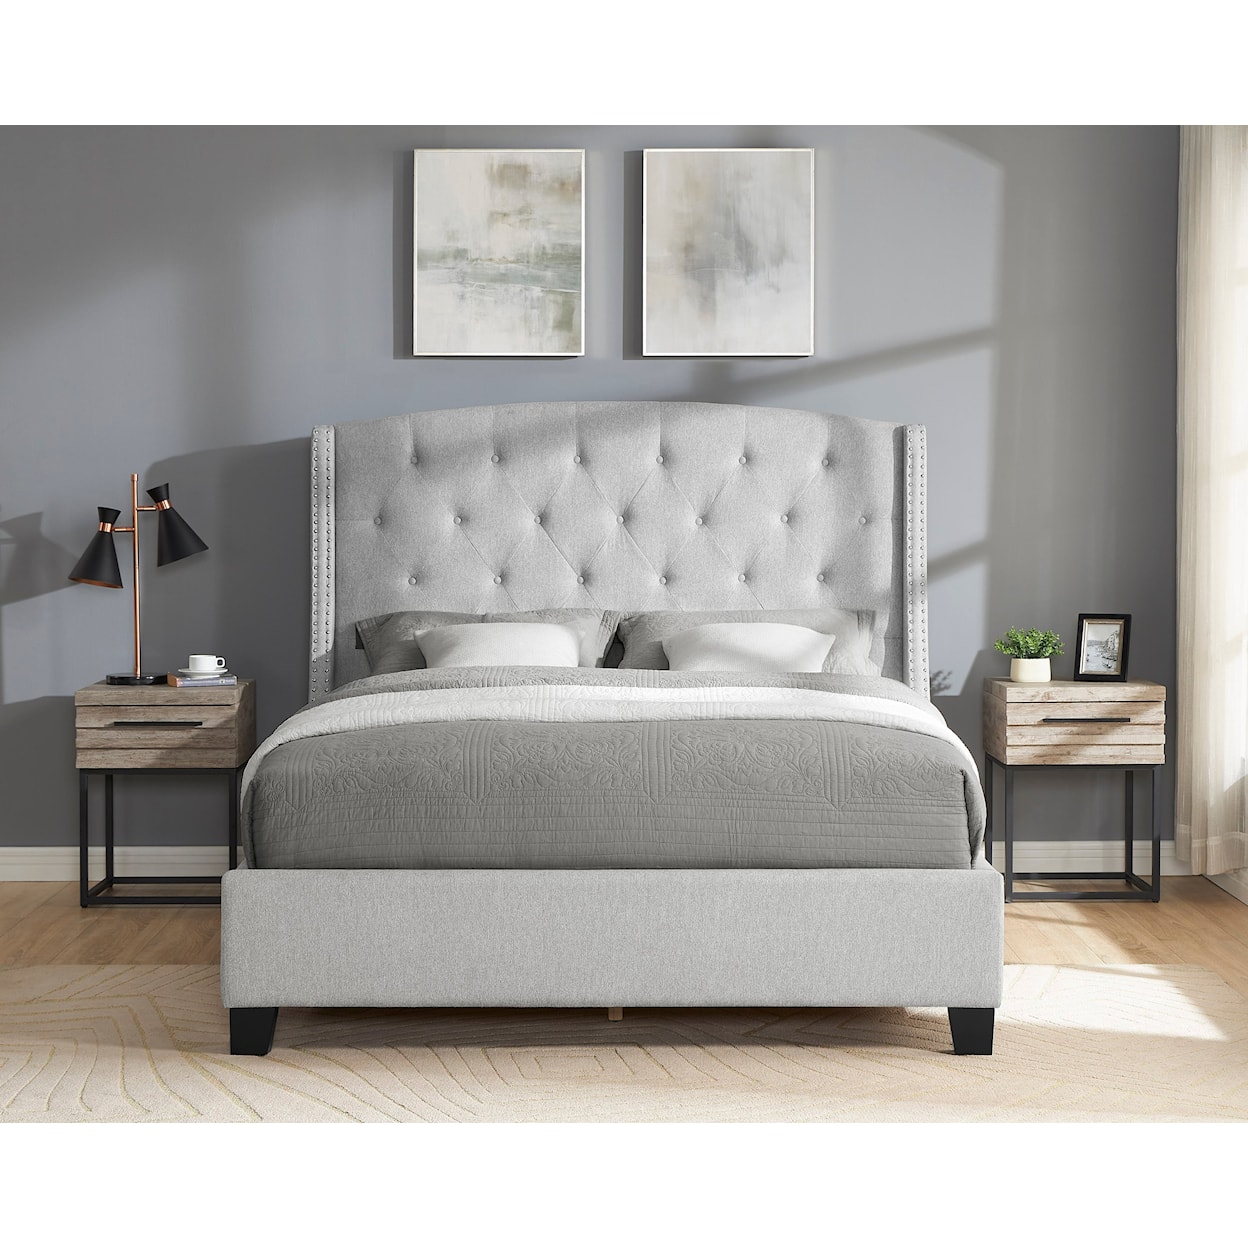 CM Eva King Upholstered Bed